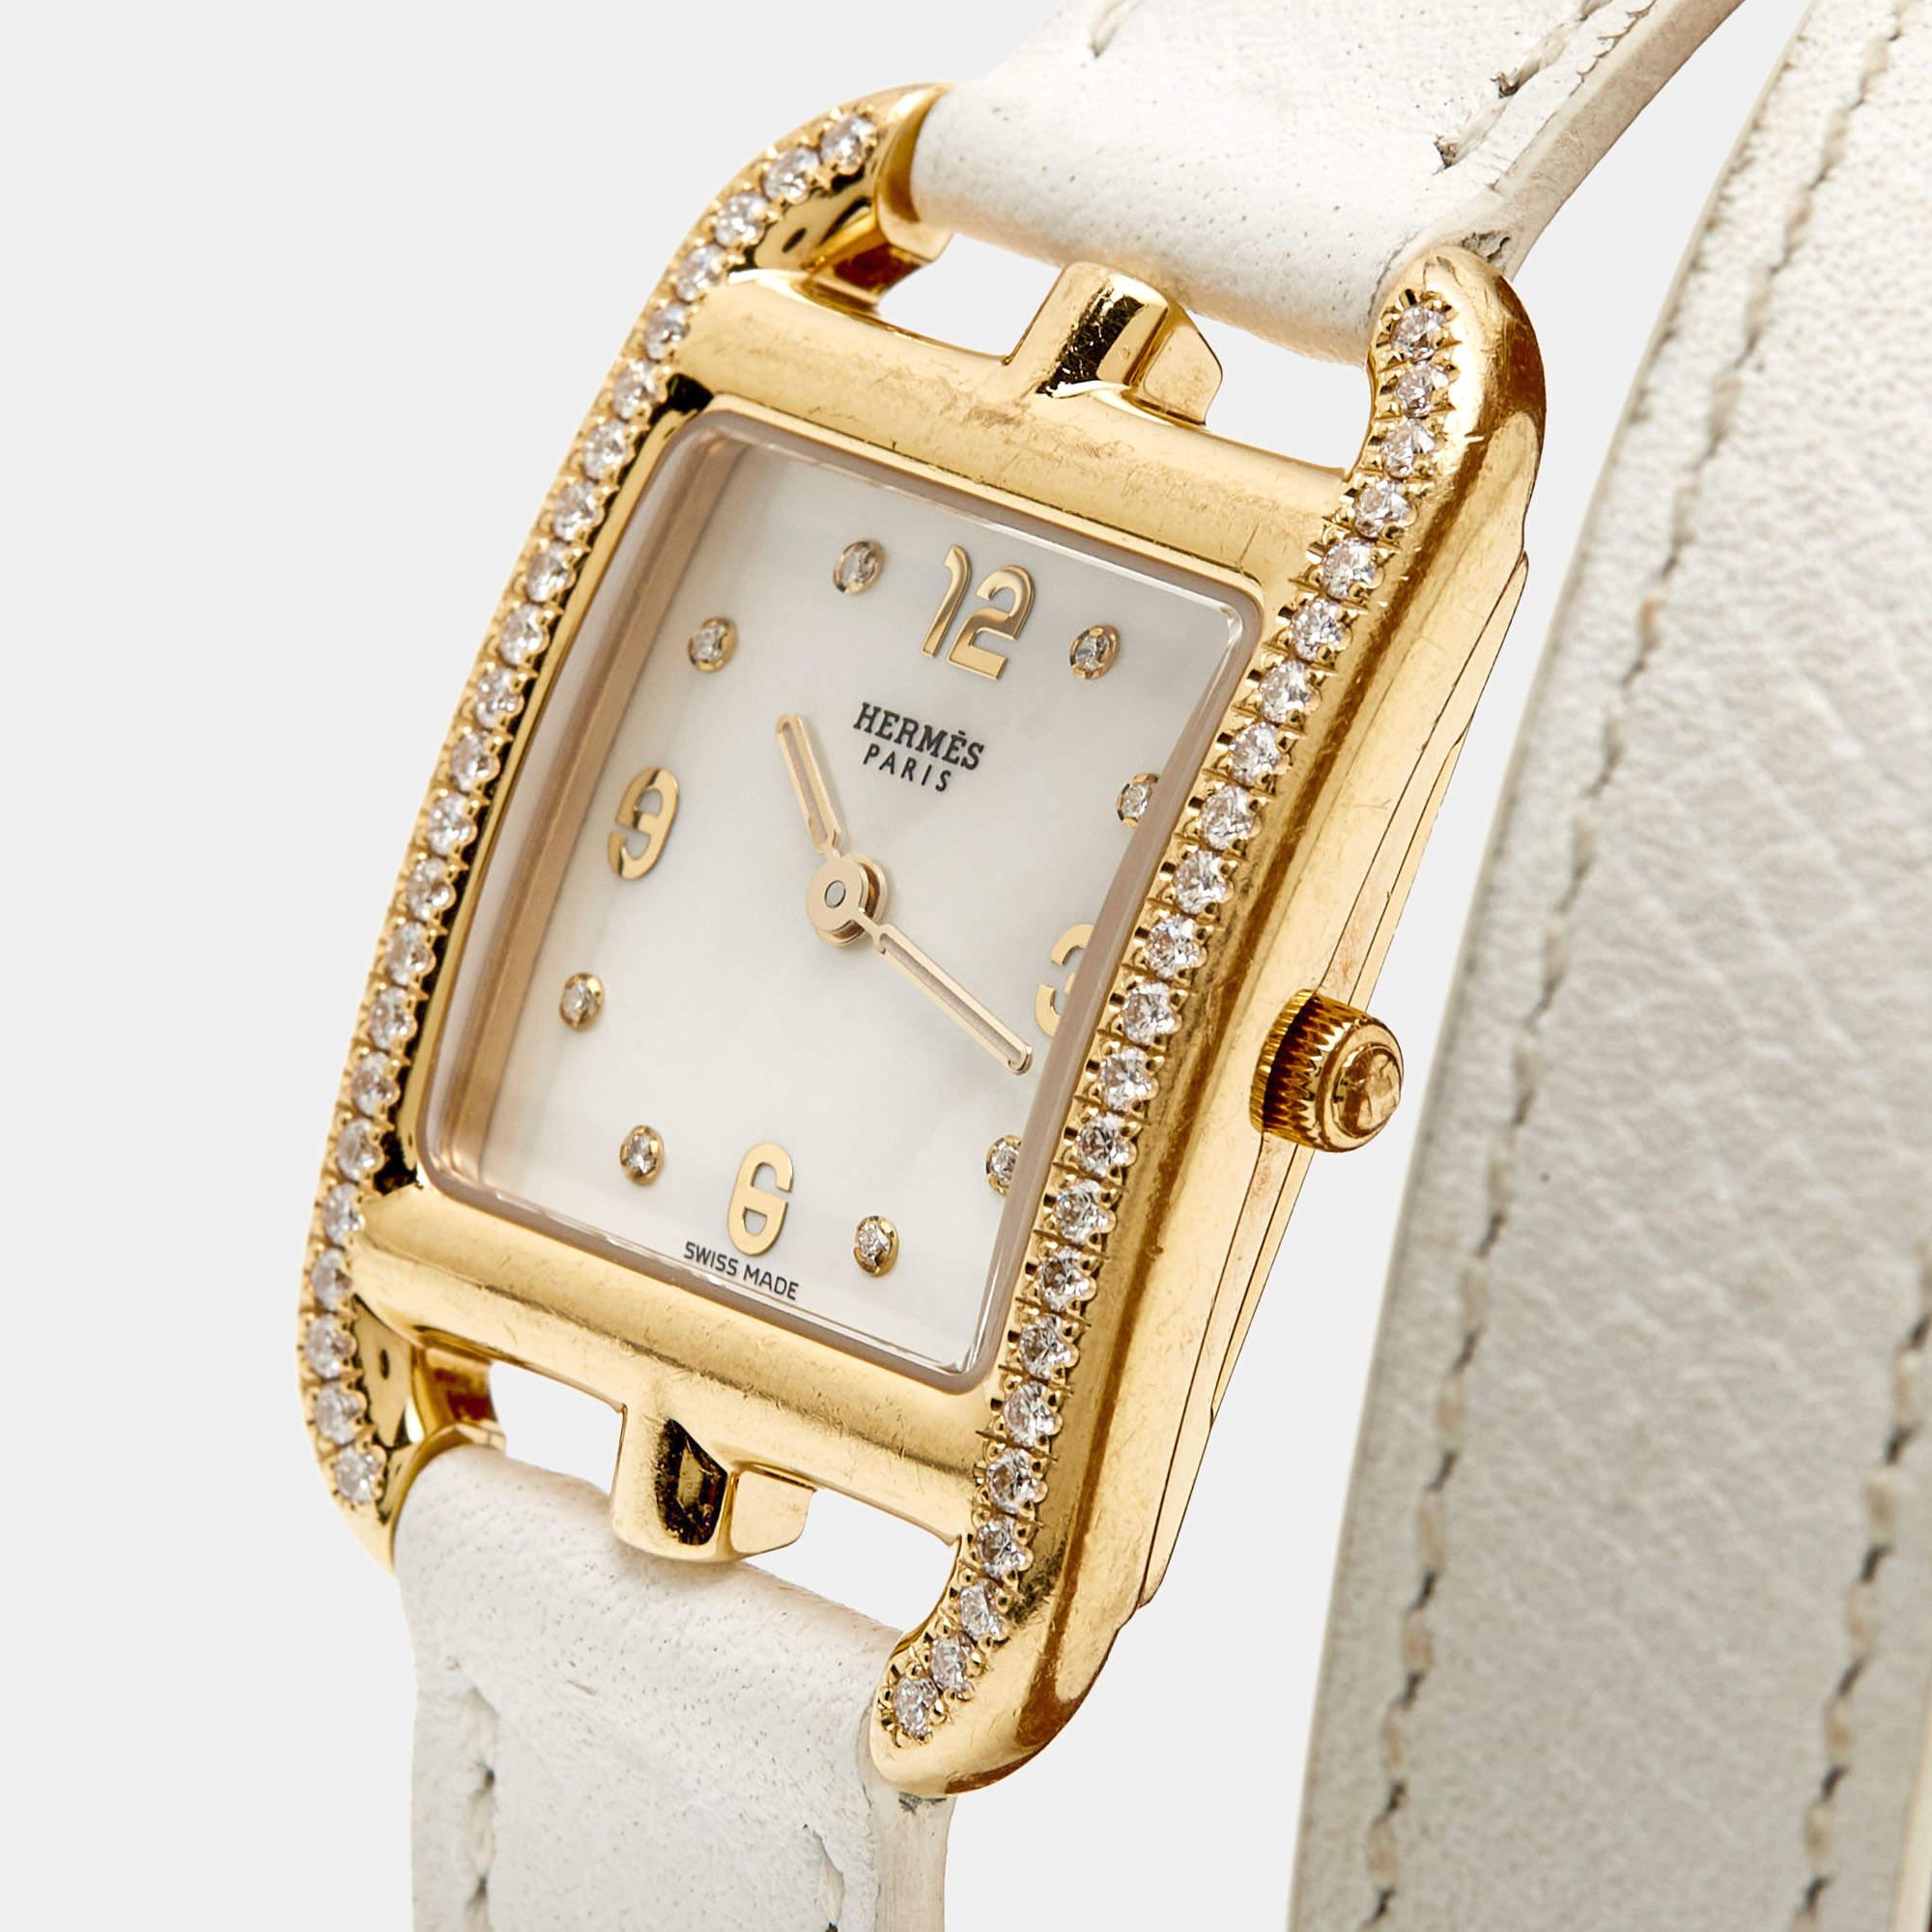 Diese Damenarmbanduhr von Hermes verleiht Ihrem Alltagsstil einen luxuriösen Touch. Sie ist aus 18 Karat Gelbgold gefertigt und verfügt über ein Perlmuttzifferblatt und die perfekte Ergänzung durch Diamanten, die ihre Schönheit unterstreichen. Die